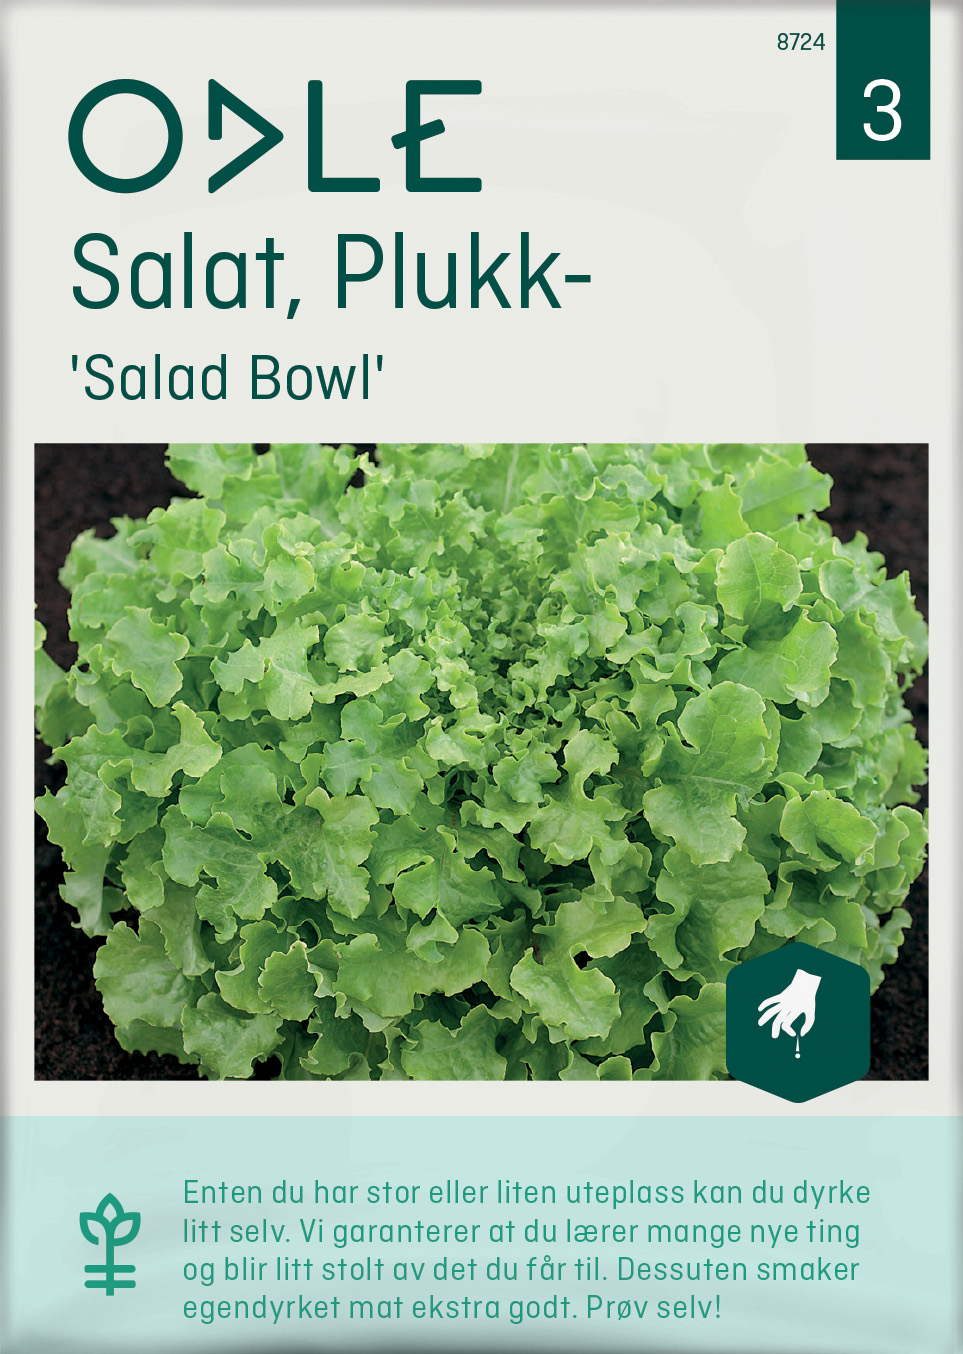 Odle 'Salad Bowl' plukk salat frø